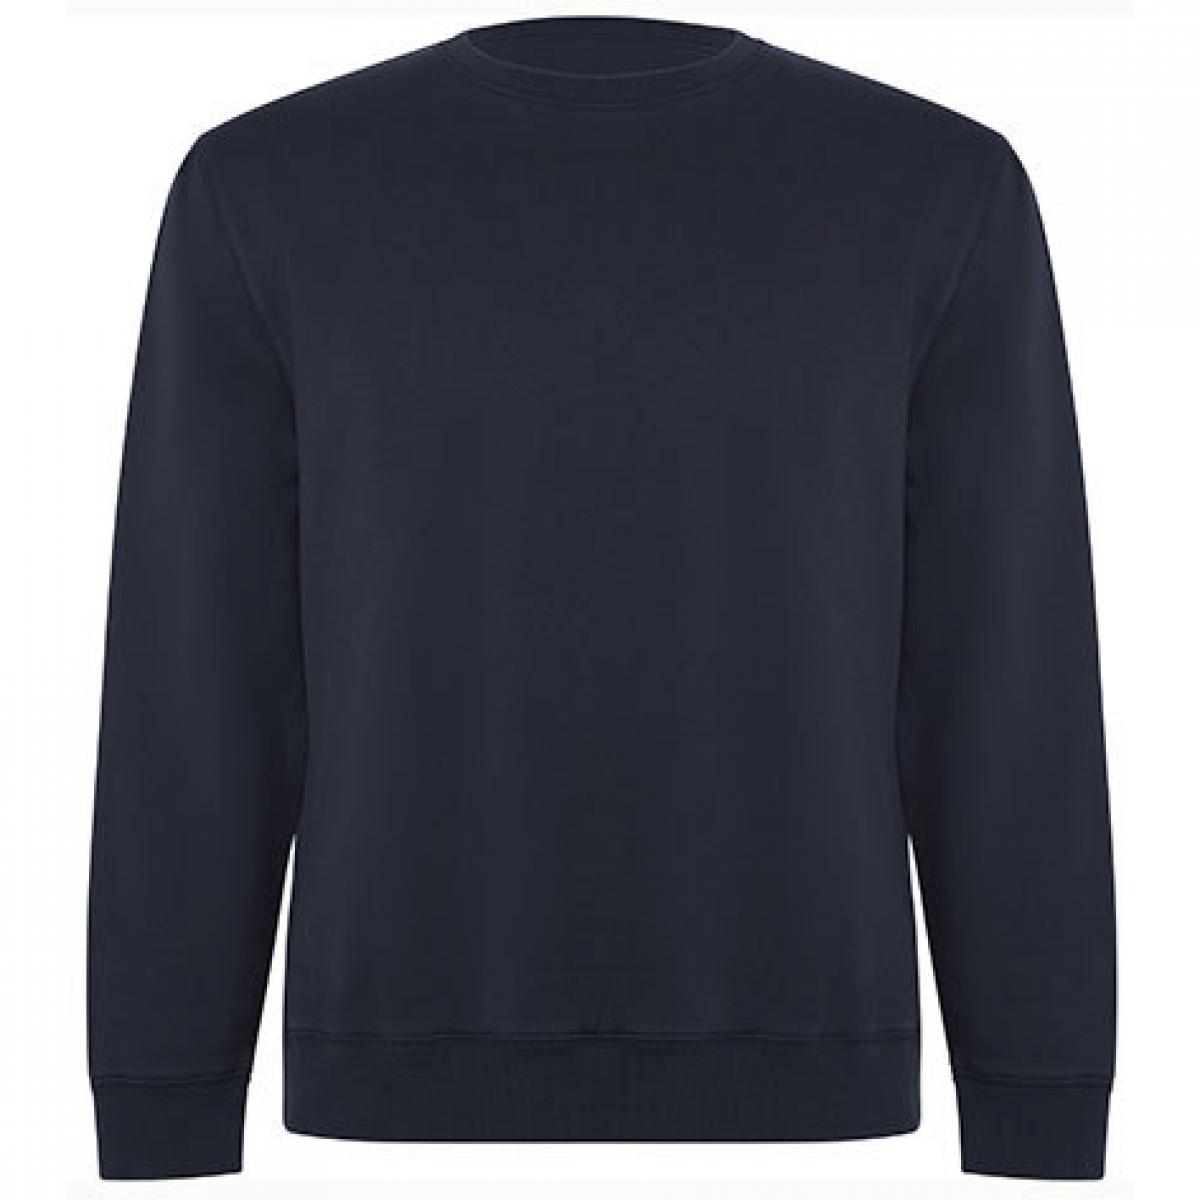 Hersteller: Roly Eco Herstellernummer: SU1071 Artikelbezeichnung: Batian Organic Sweatshirt - Unisex Farbe: Navy Blue 55